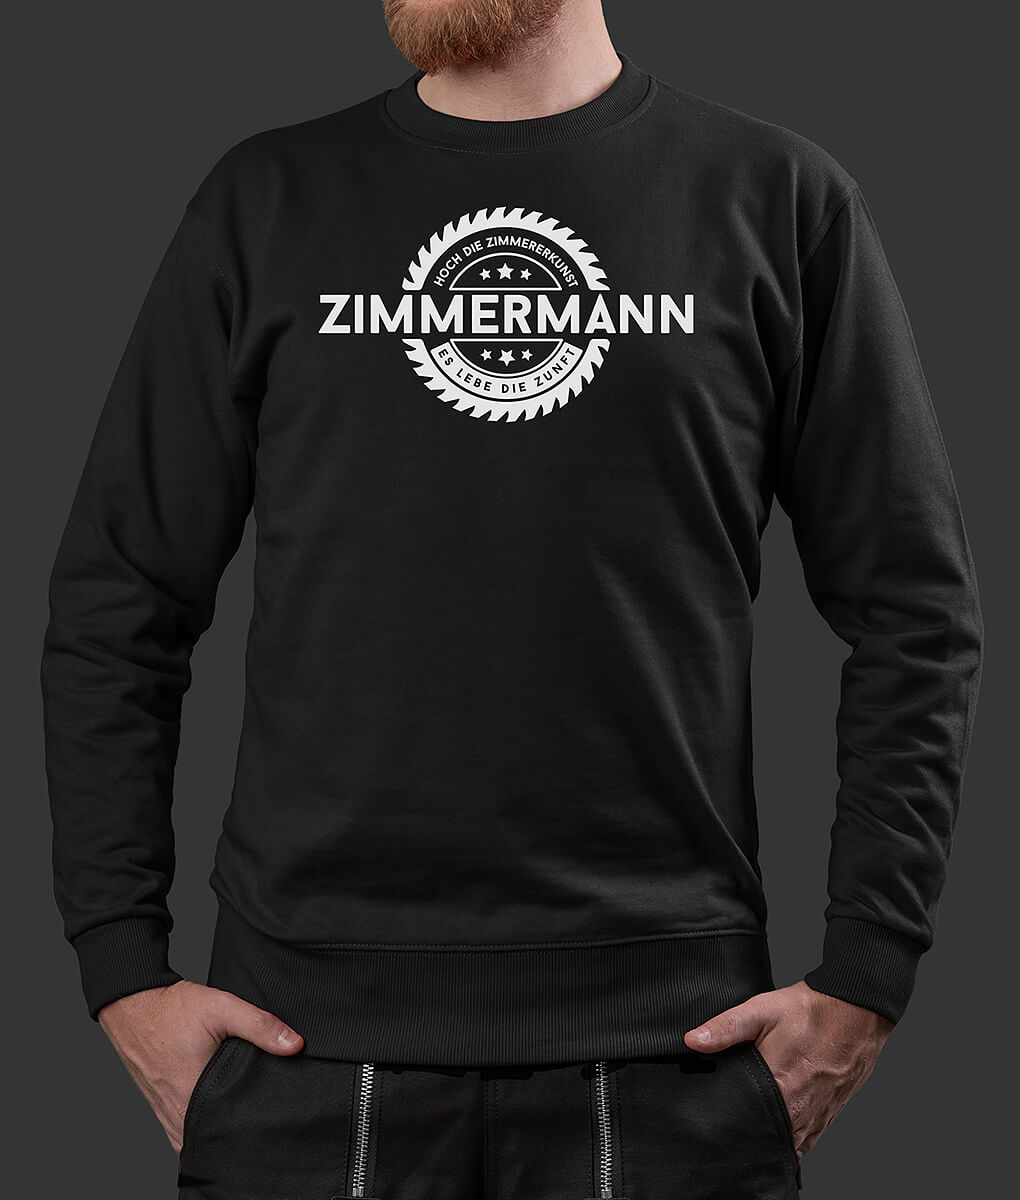 Sweater Stefan Säge Zimmermann Brust schwarz S